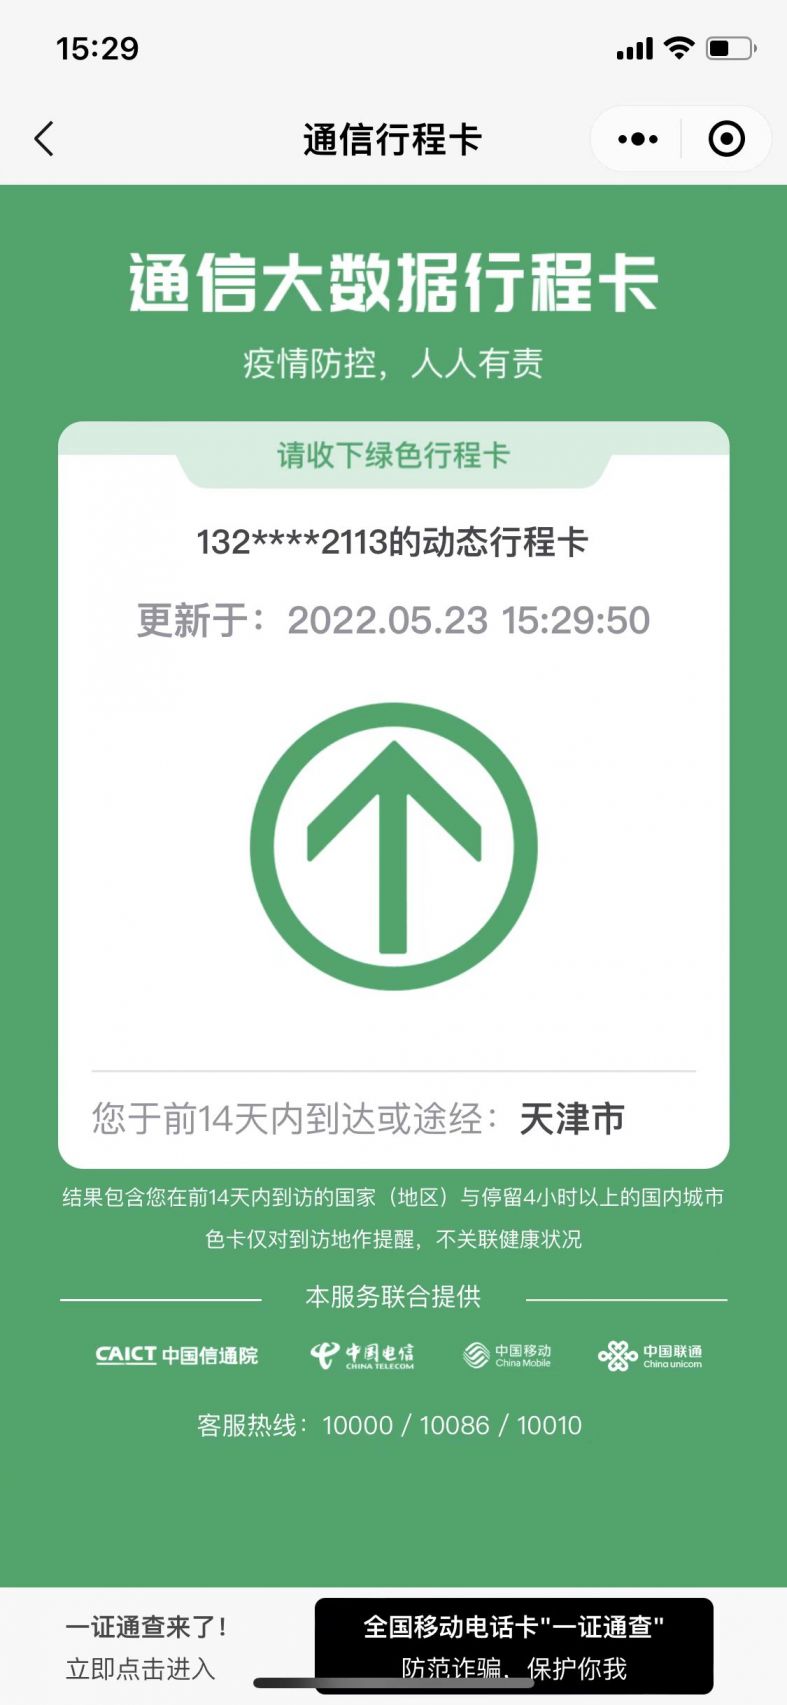 通信大数据行程卡上,天津市不会标有*天津预计什么时候摘星?